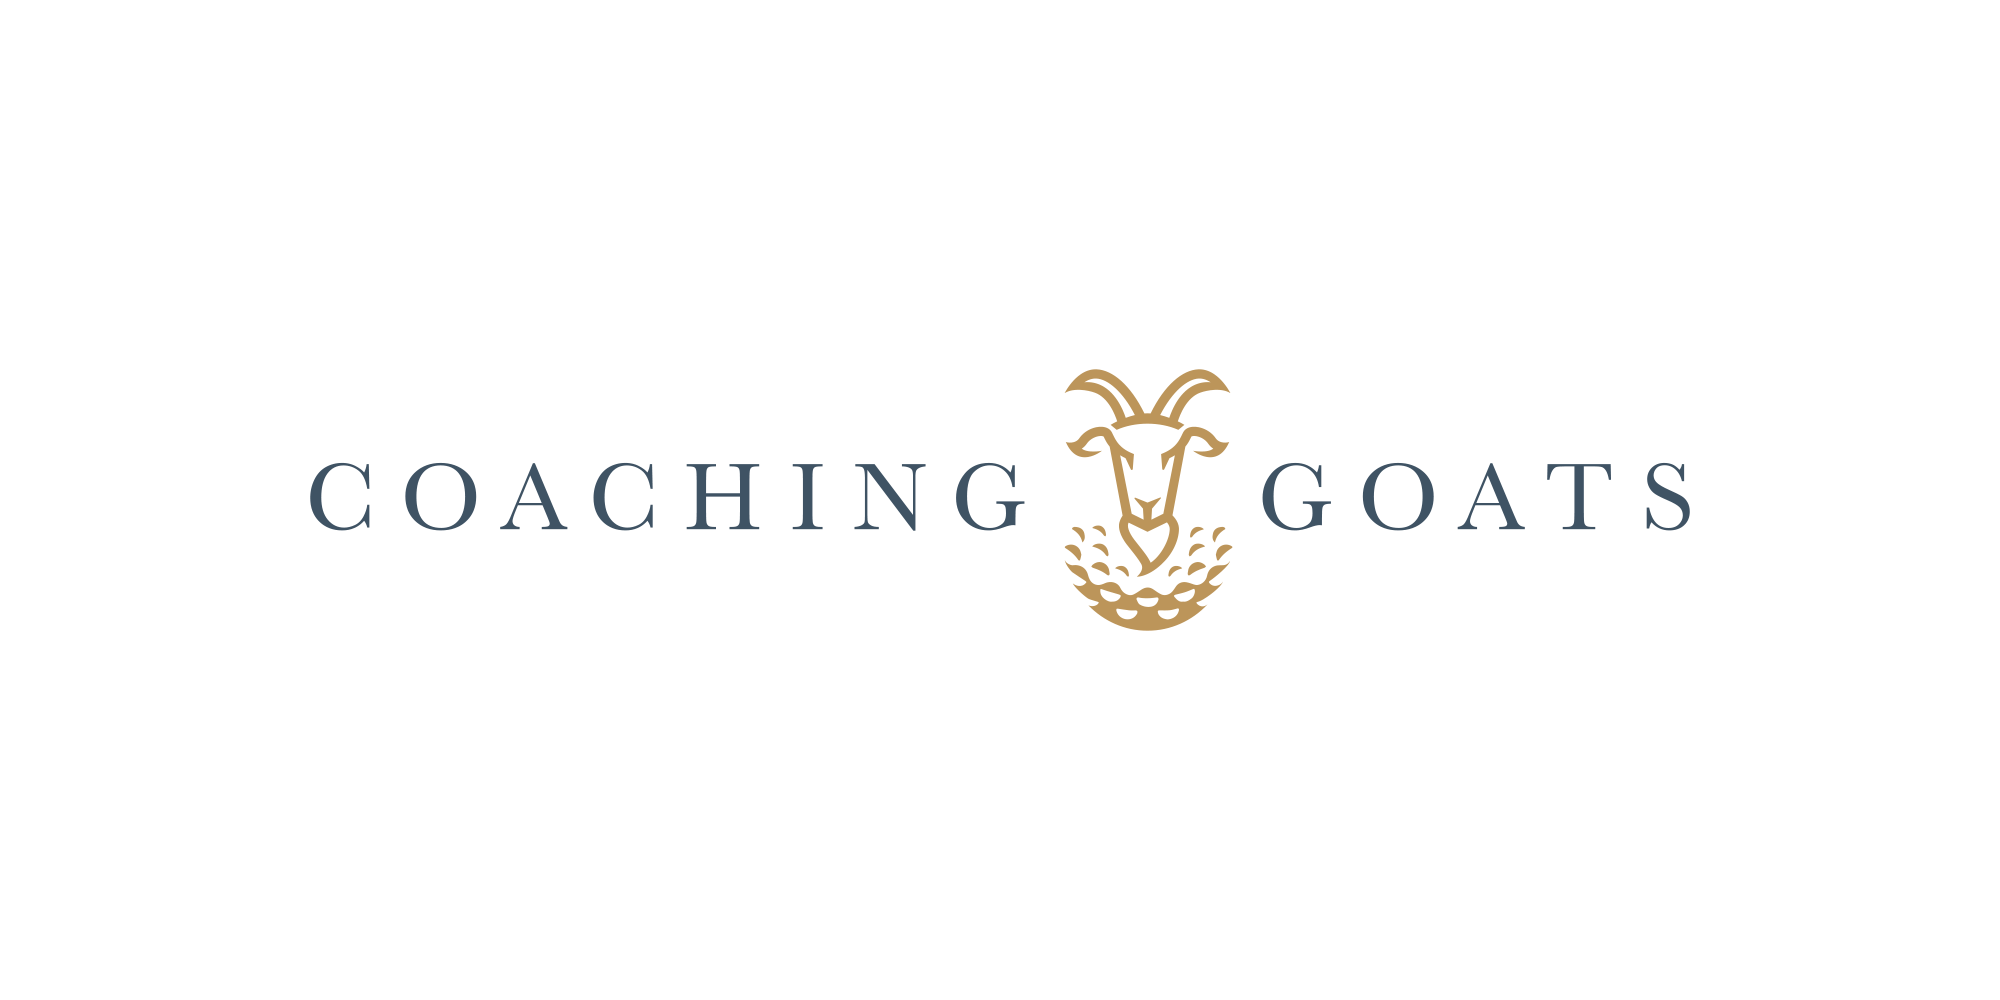 Coaching GOATS logo design